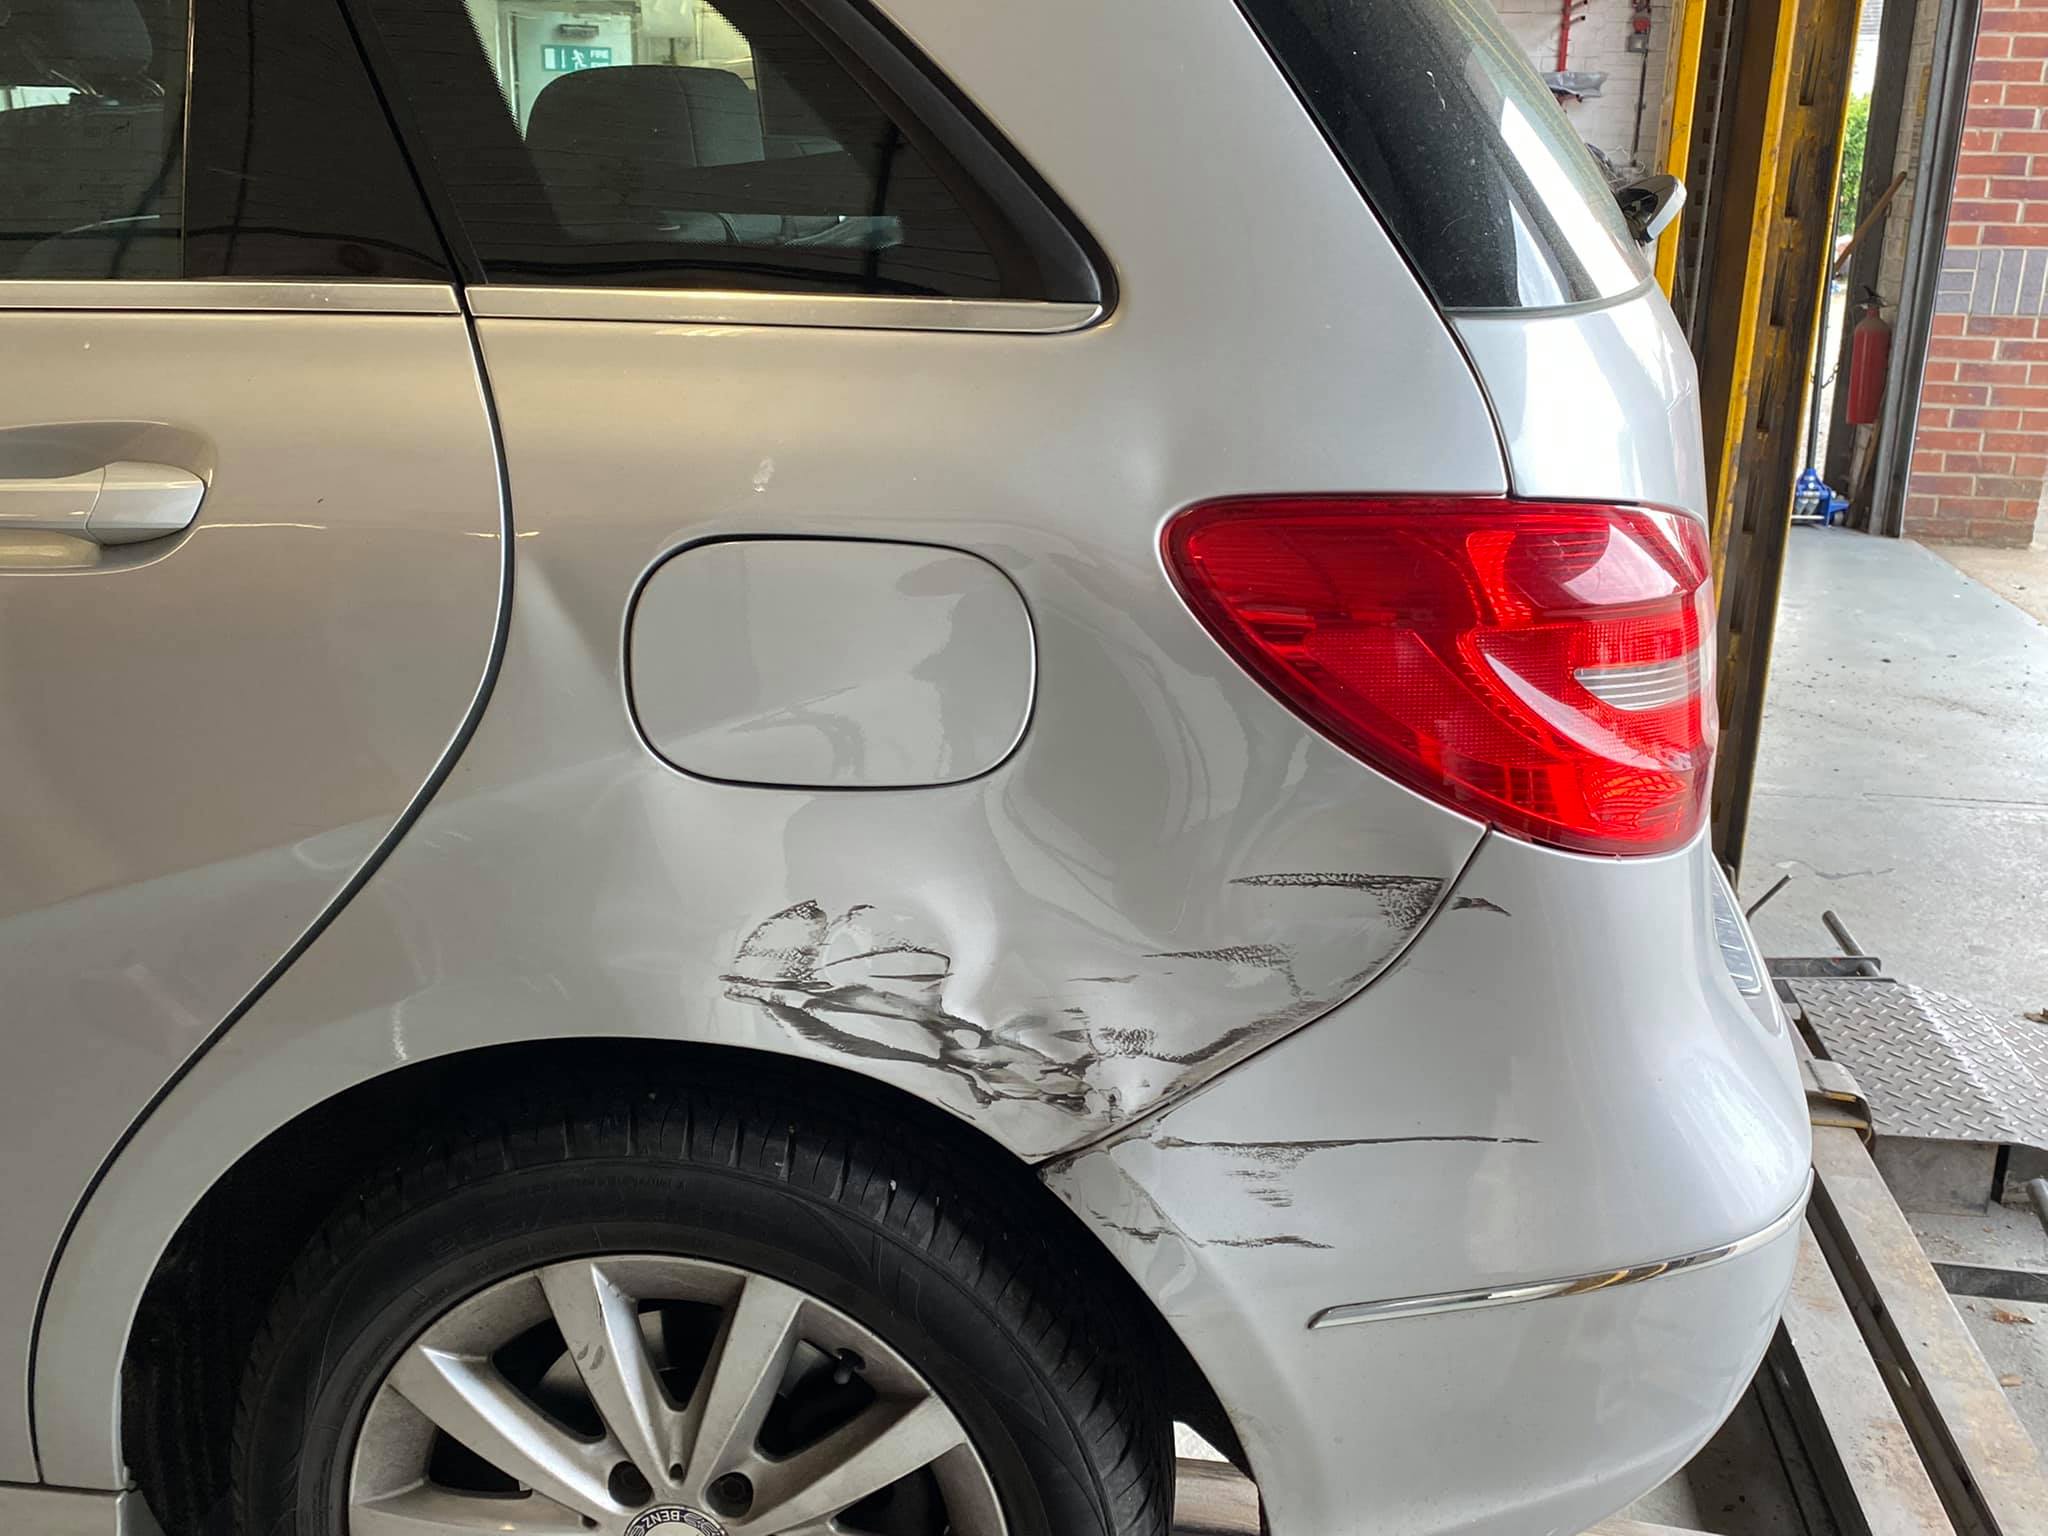 damaged rear of silver car